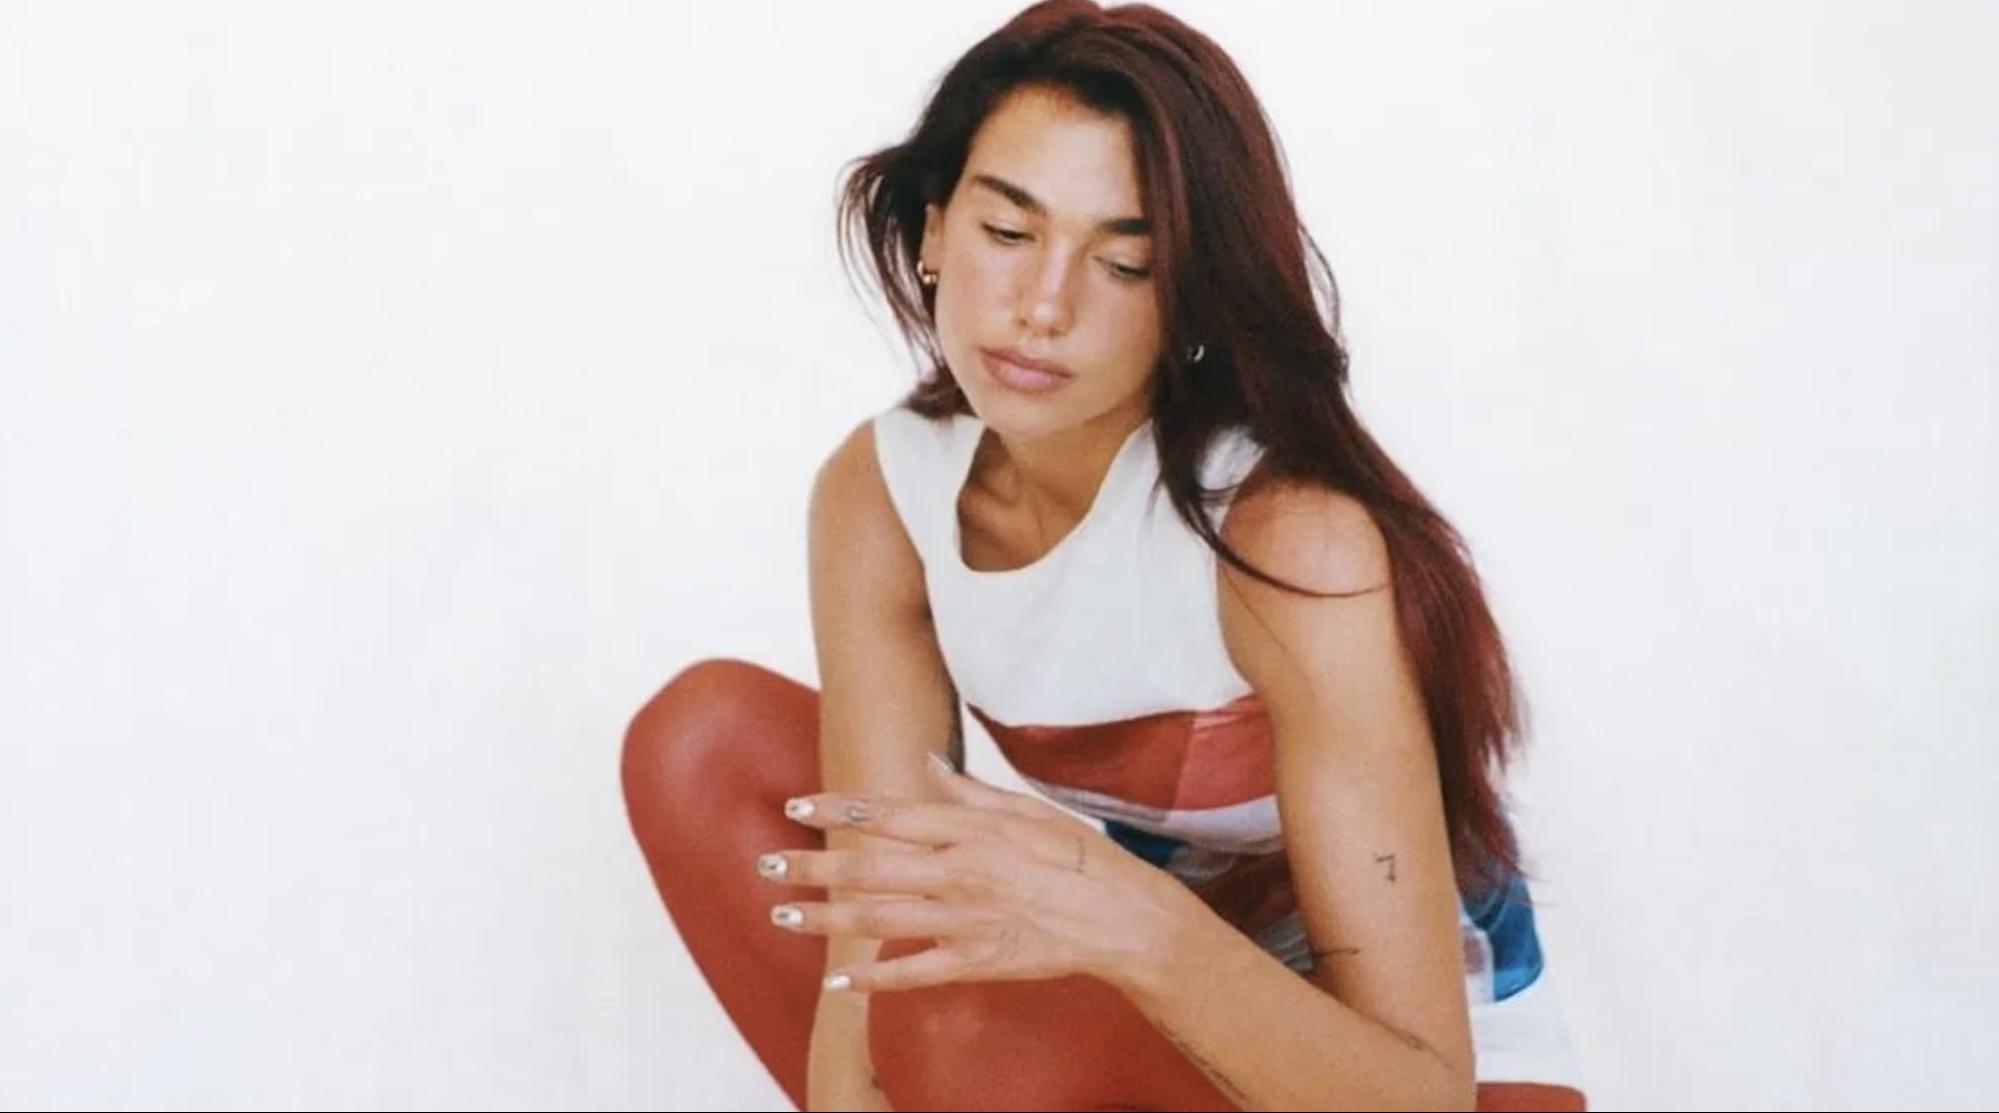 Foto da cantora Dua Lipa, mulher branca de cabelos ruivos. Ela está agachada e olhando para baixo. A artista veste uma blusa regata branca com uma linha vermelha e utiliza uma meia-calça vermelha.